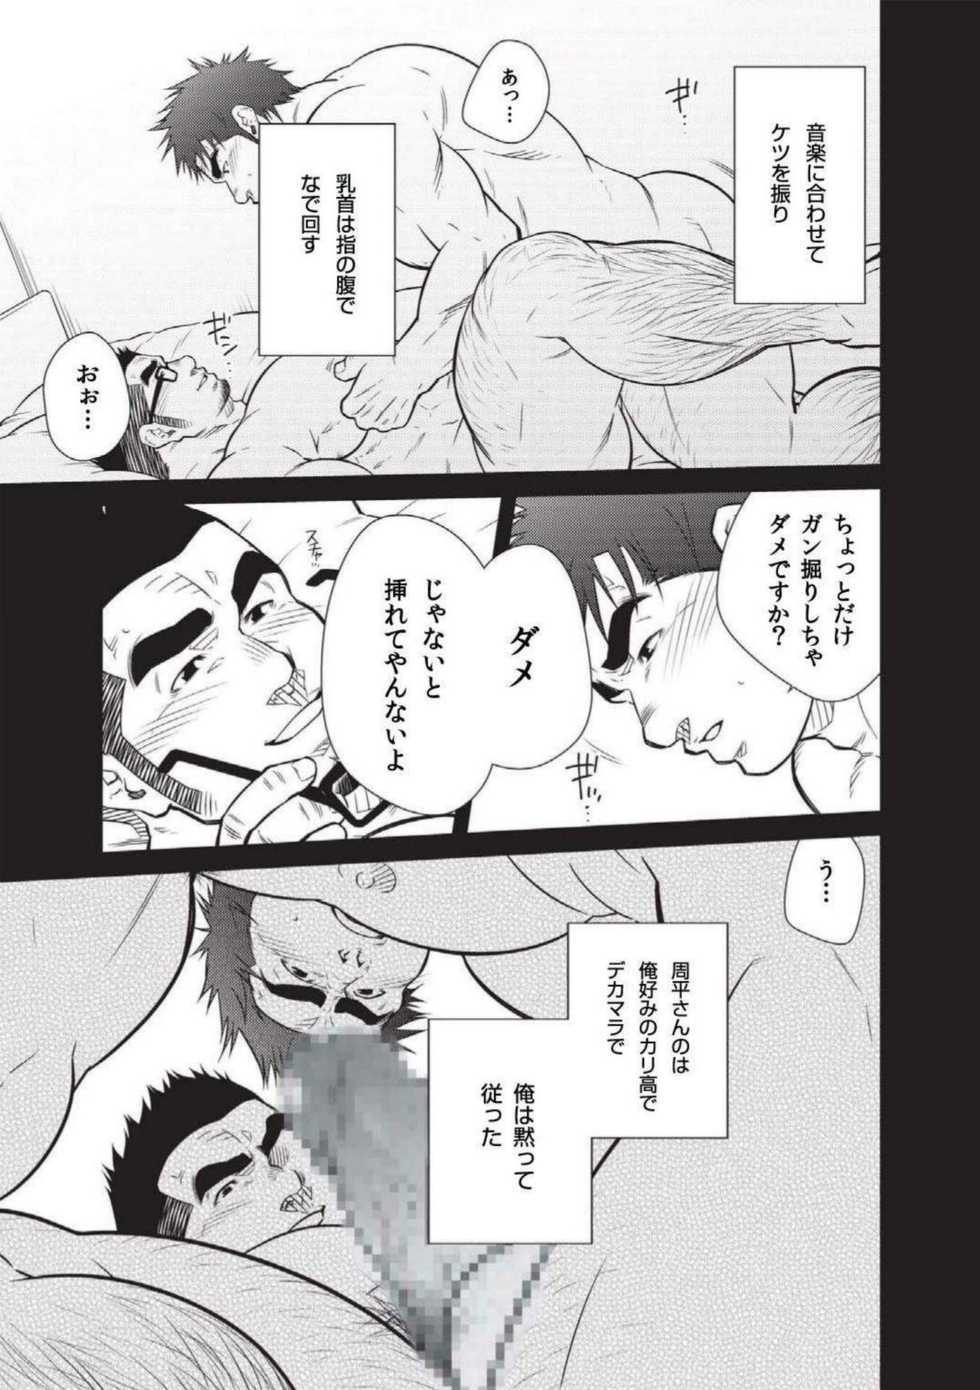 Terujirou - 晃次郎 - Badi  Bʌ́di (バディ) 112 (June 2015) - Page 5